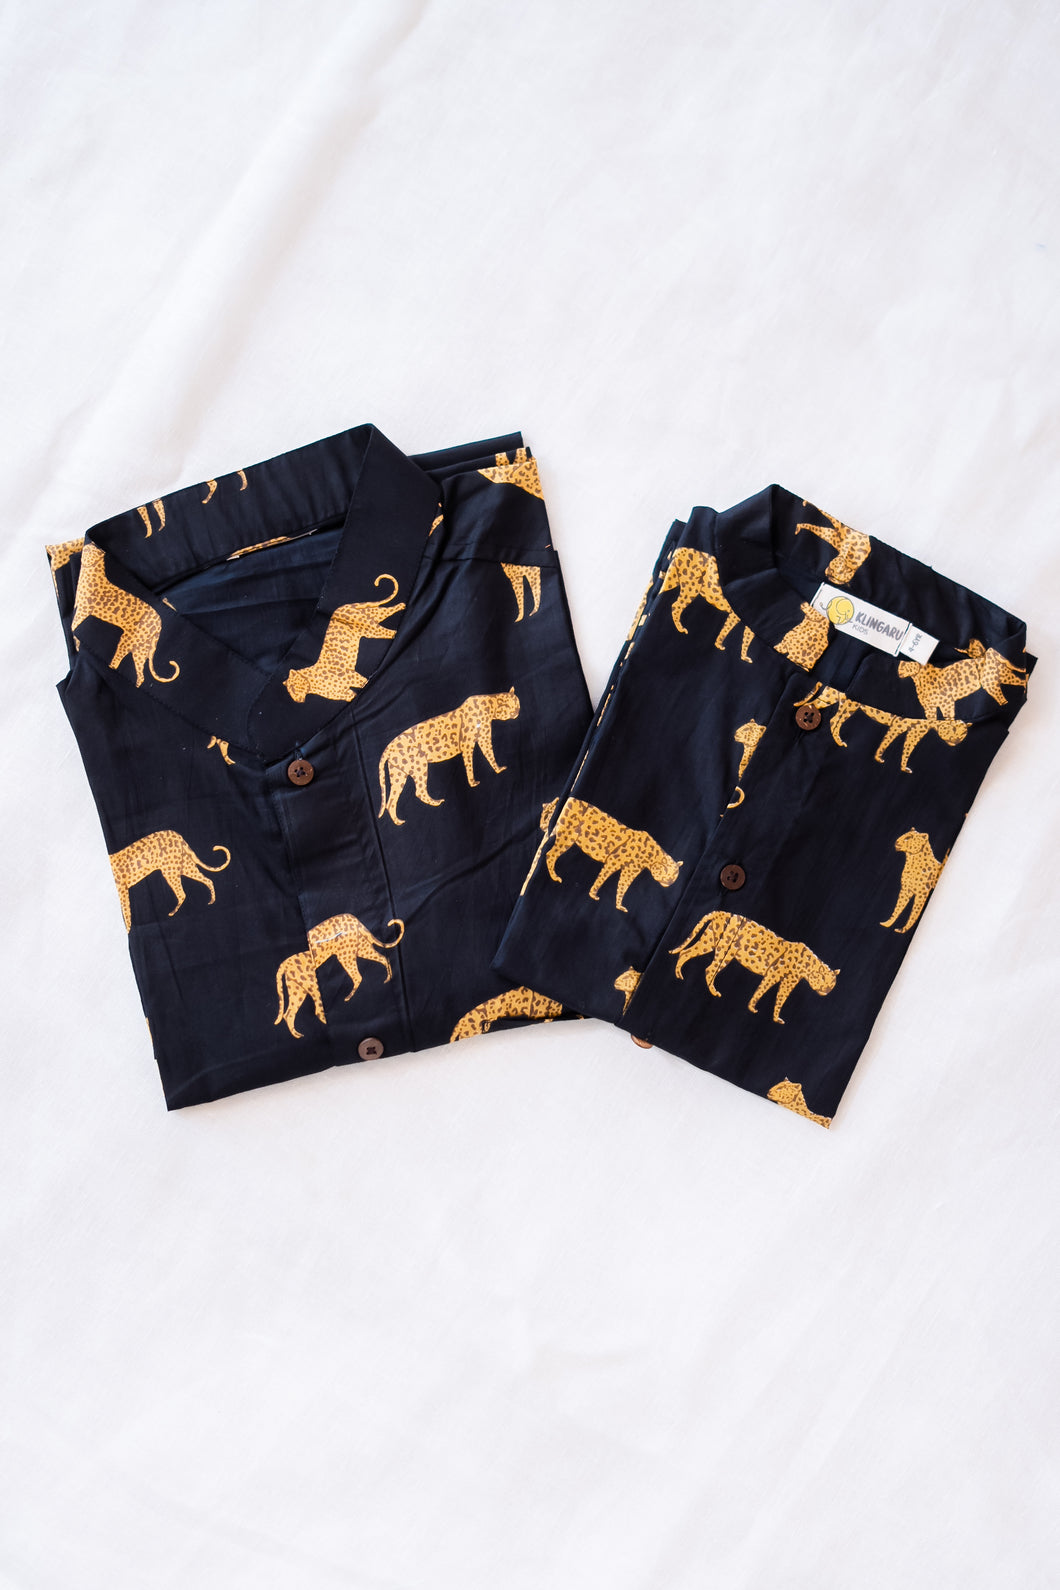 Klingaru Twinning Shirt - Black Cheetah